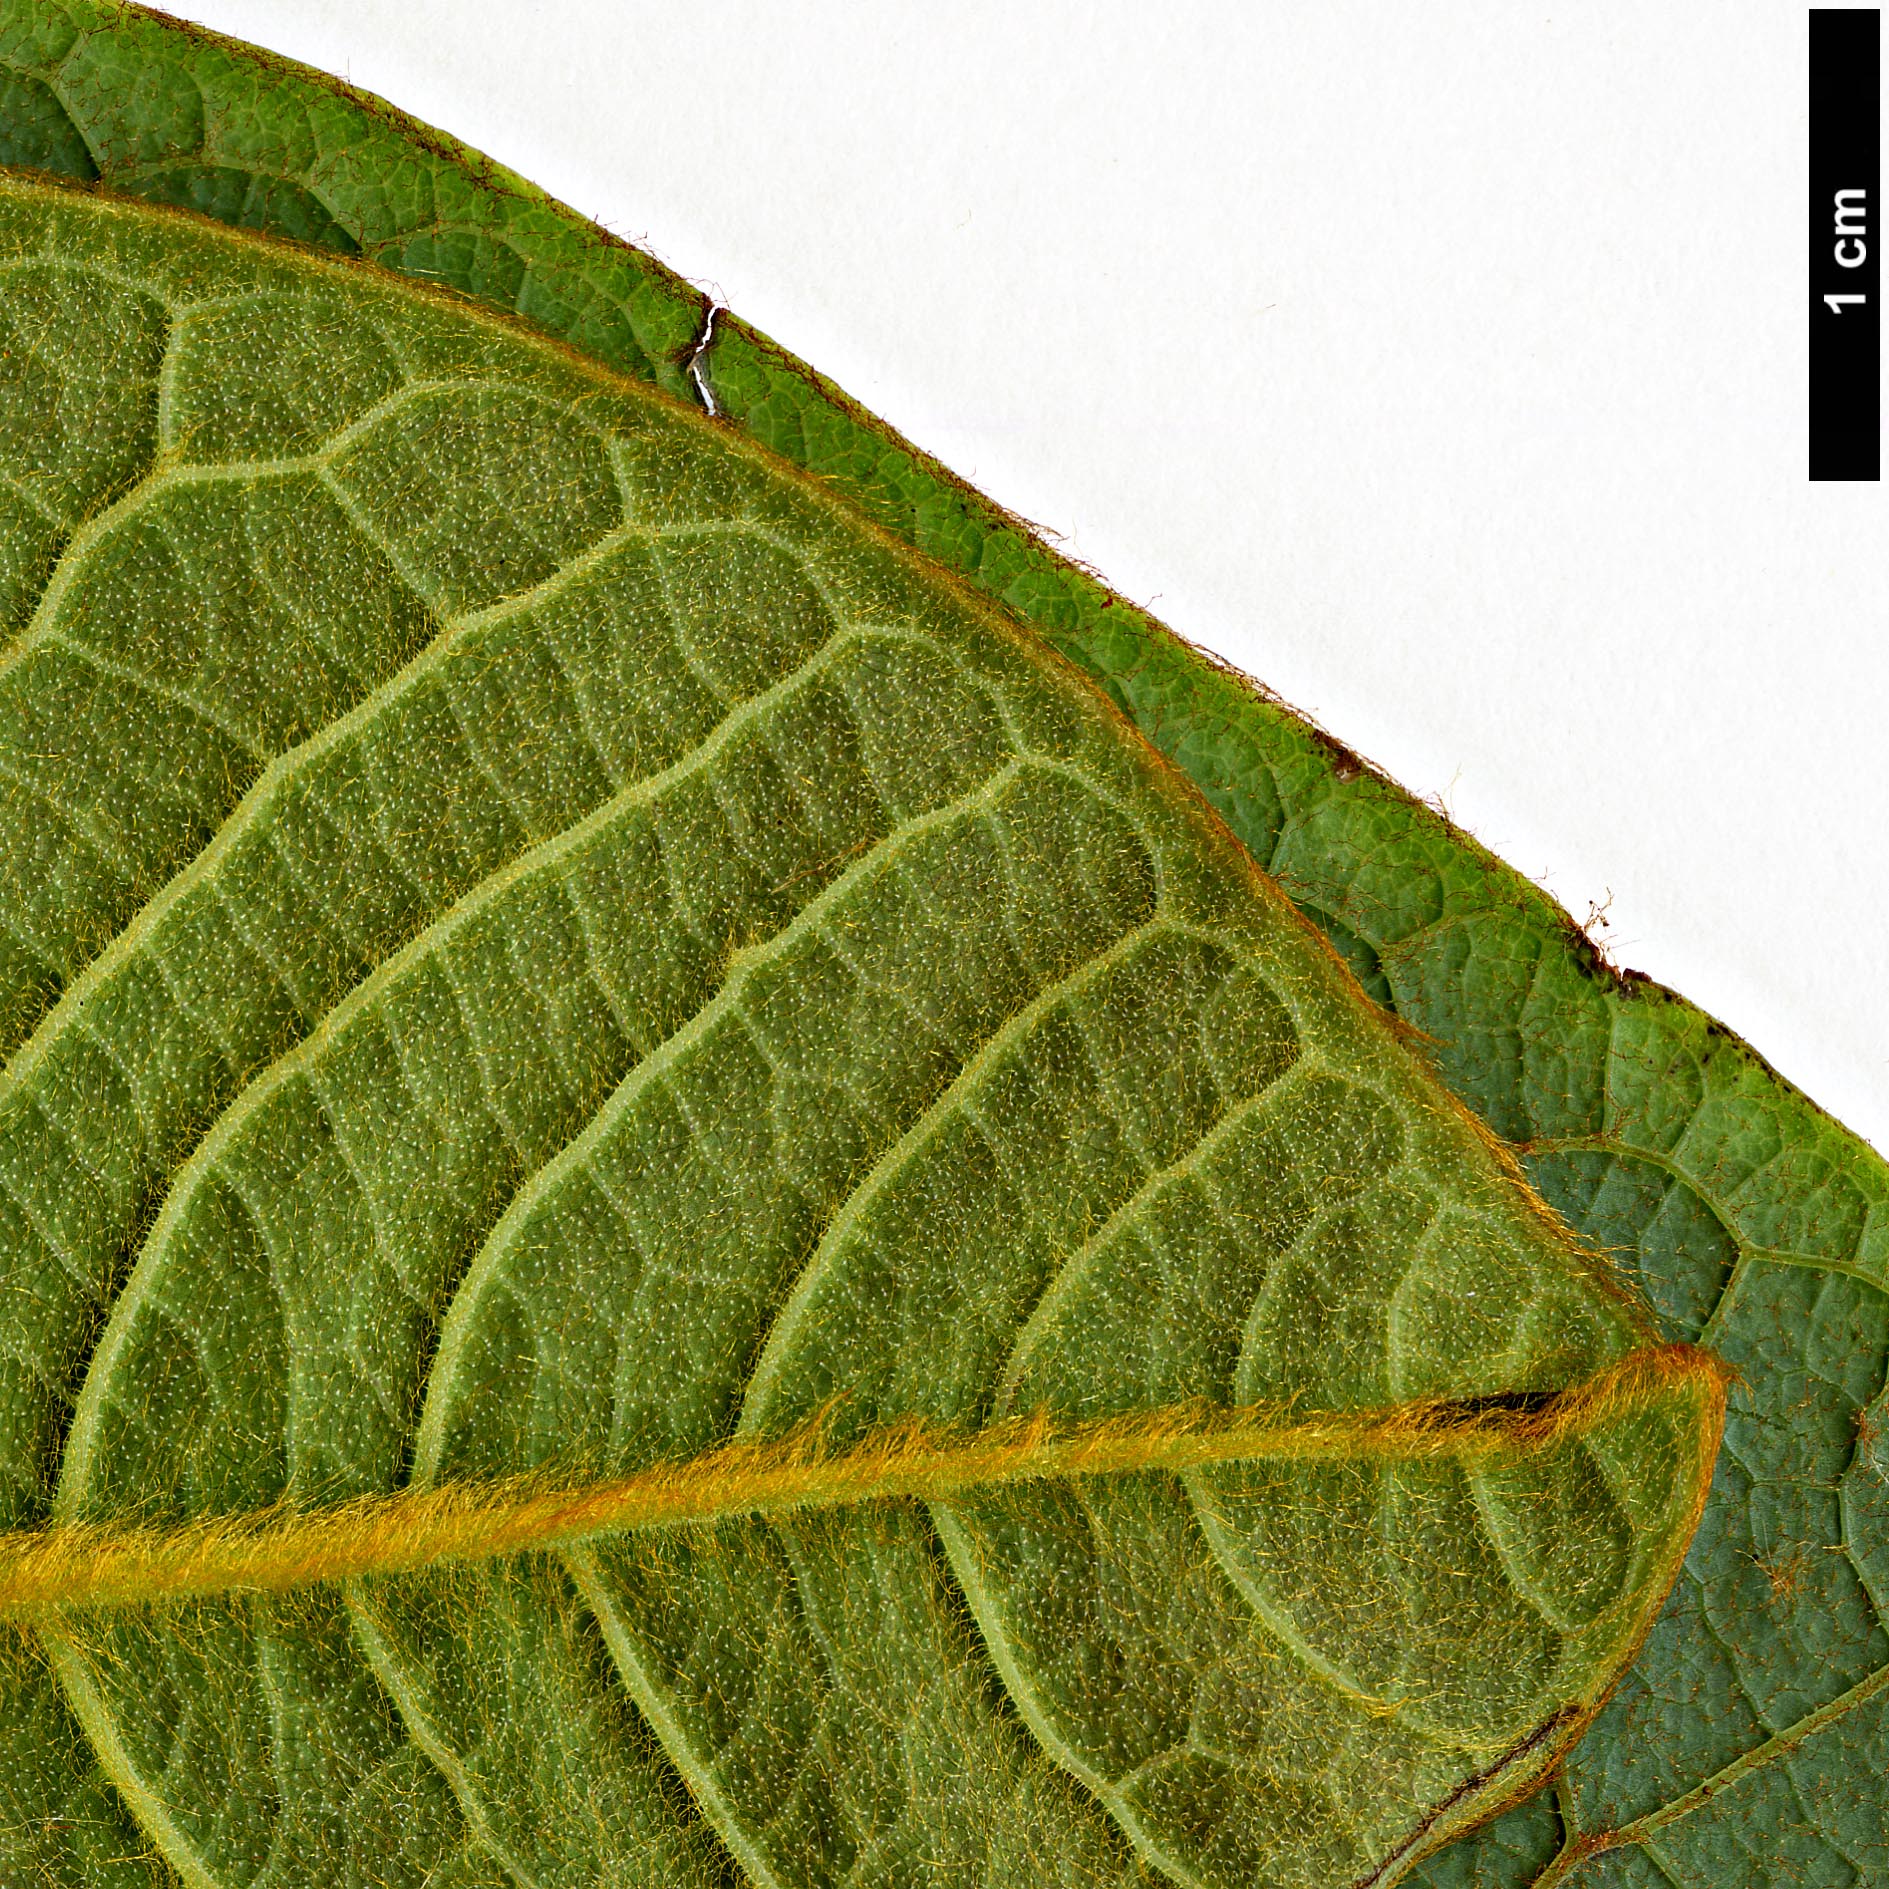 High resolution image: Family: Magnoliaceae - Genus: Magnolia - Taxon: rostrata